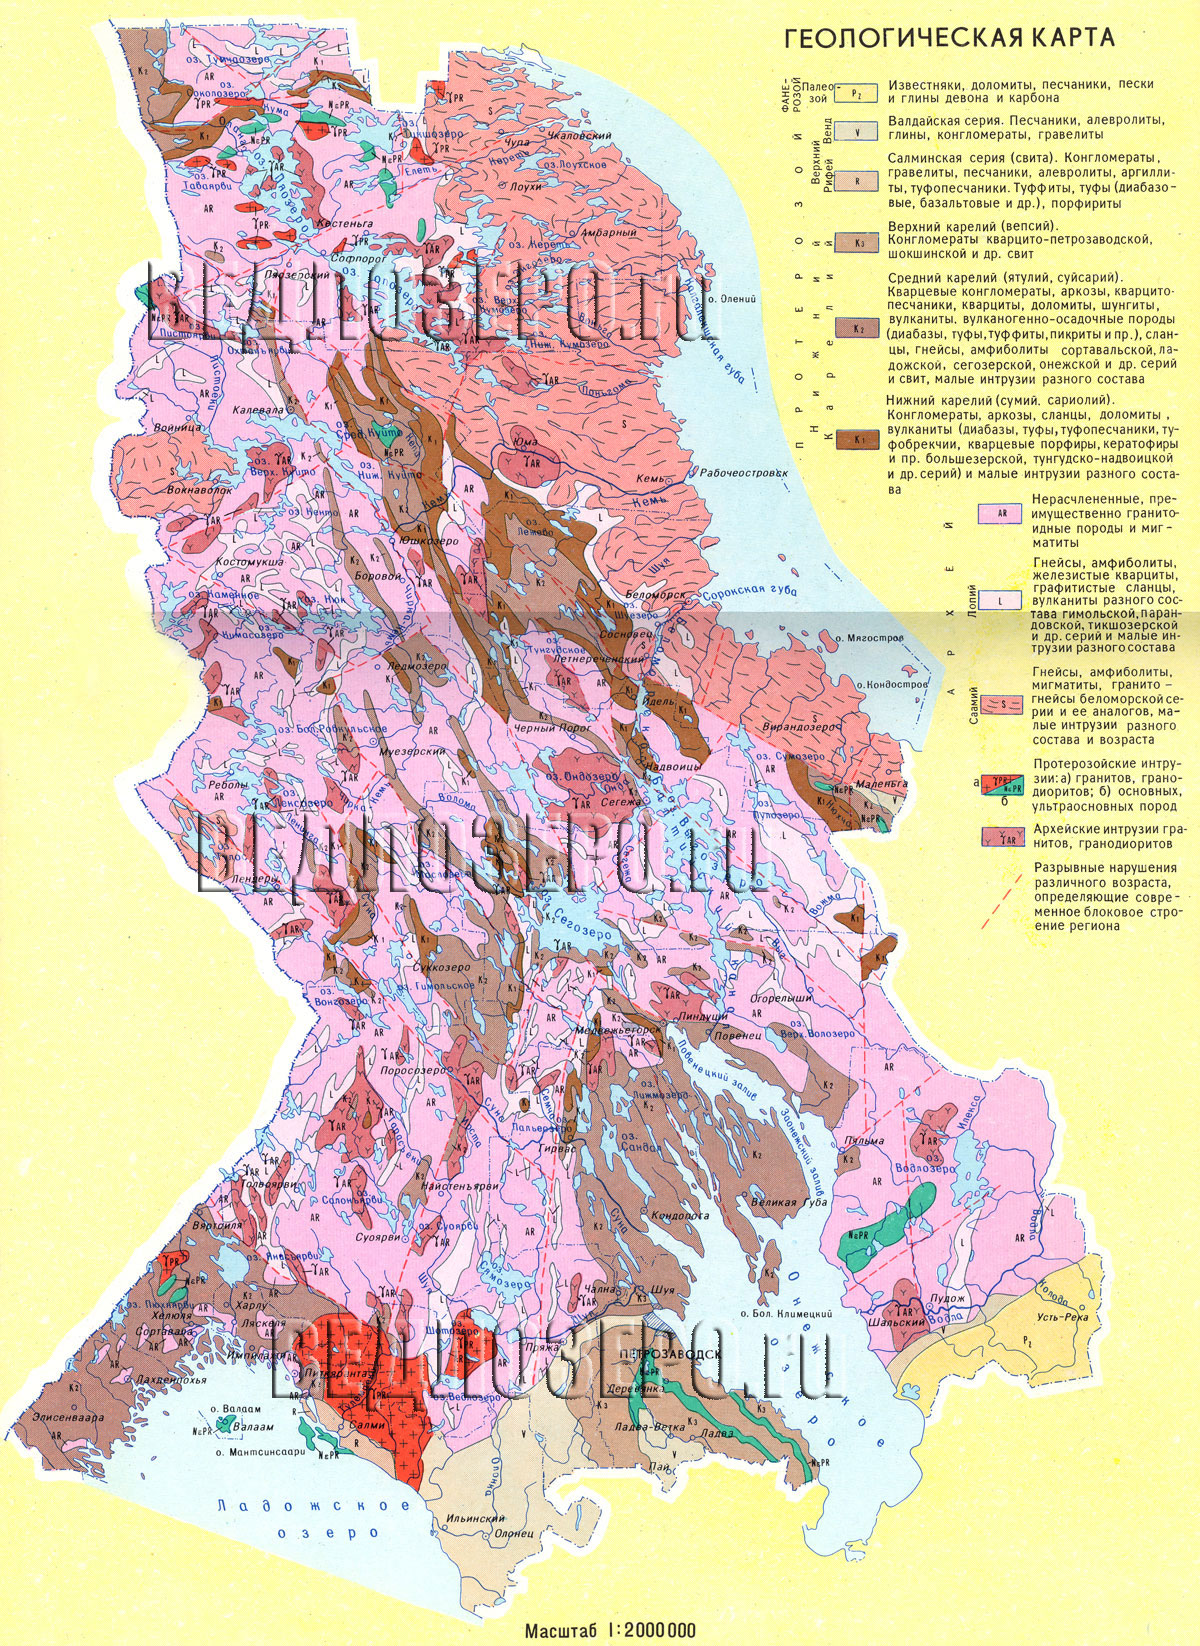 Геологическая карта Республики Карелия. Скачать карту Карелии